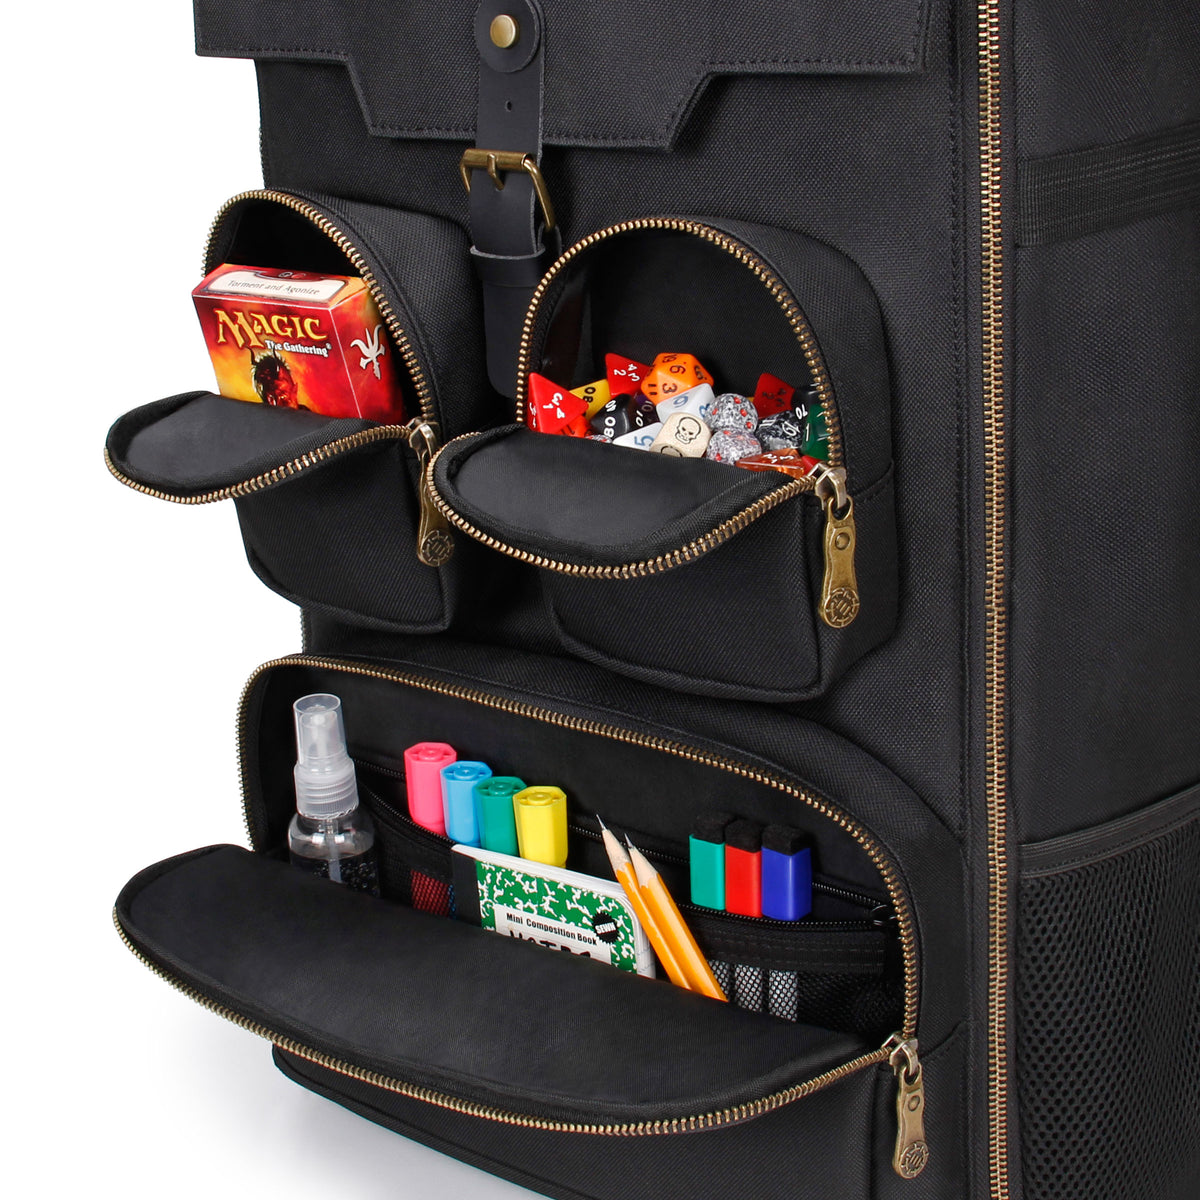 Enhance Card Storage Backpack Black